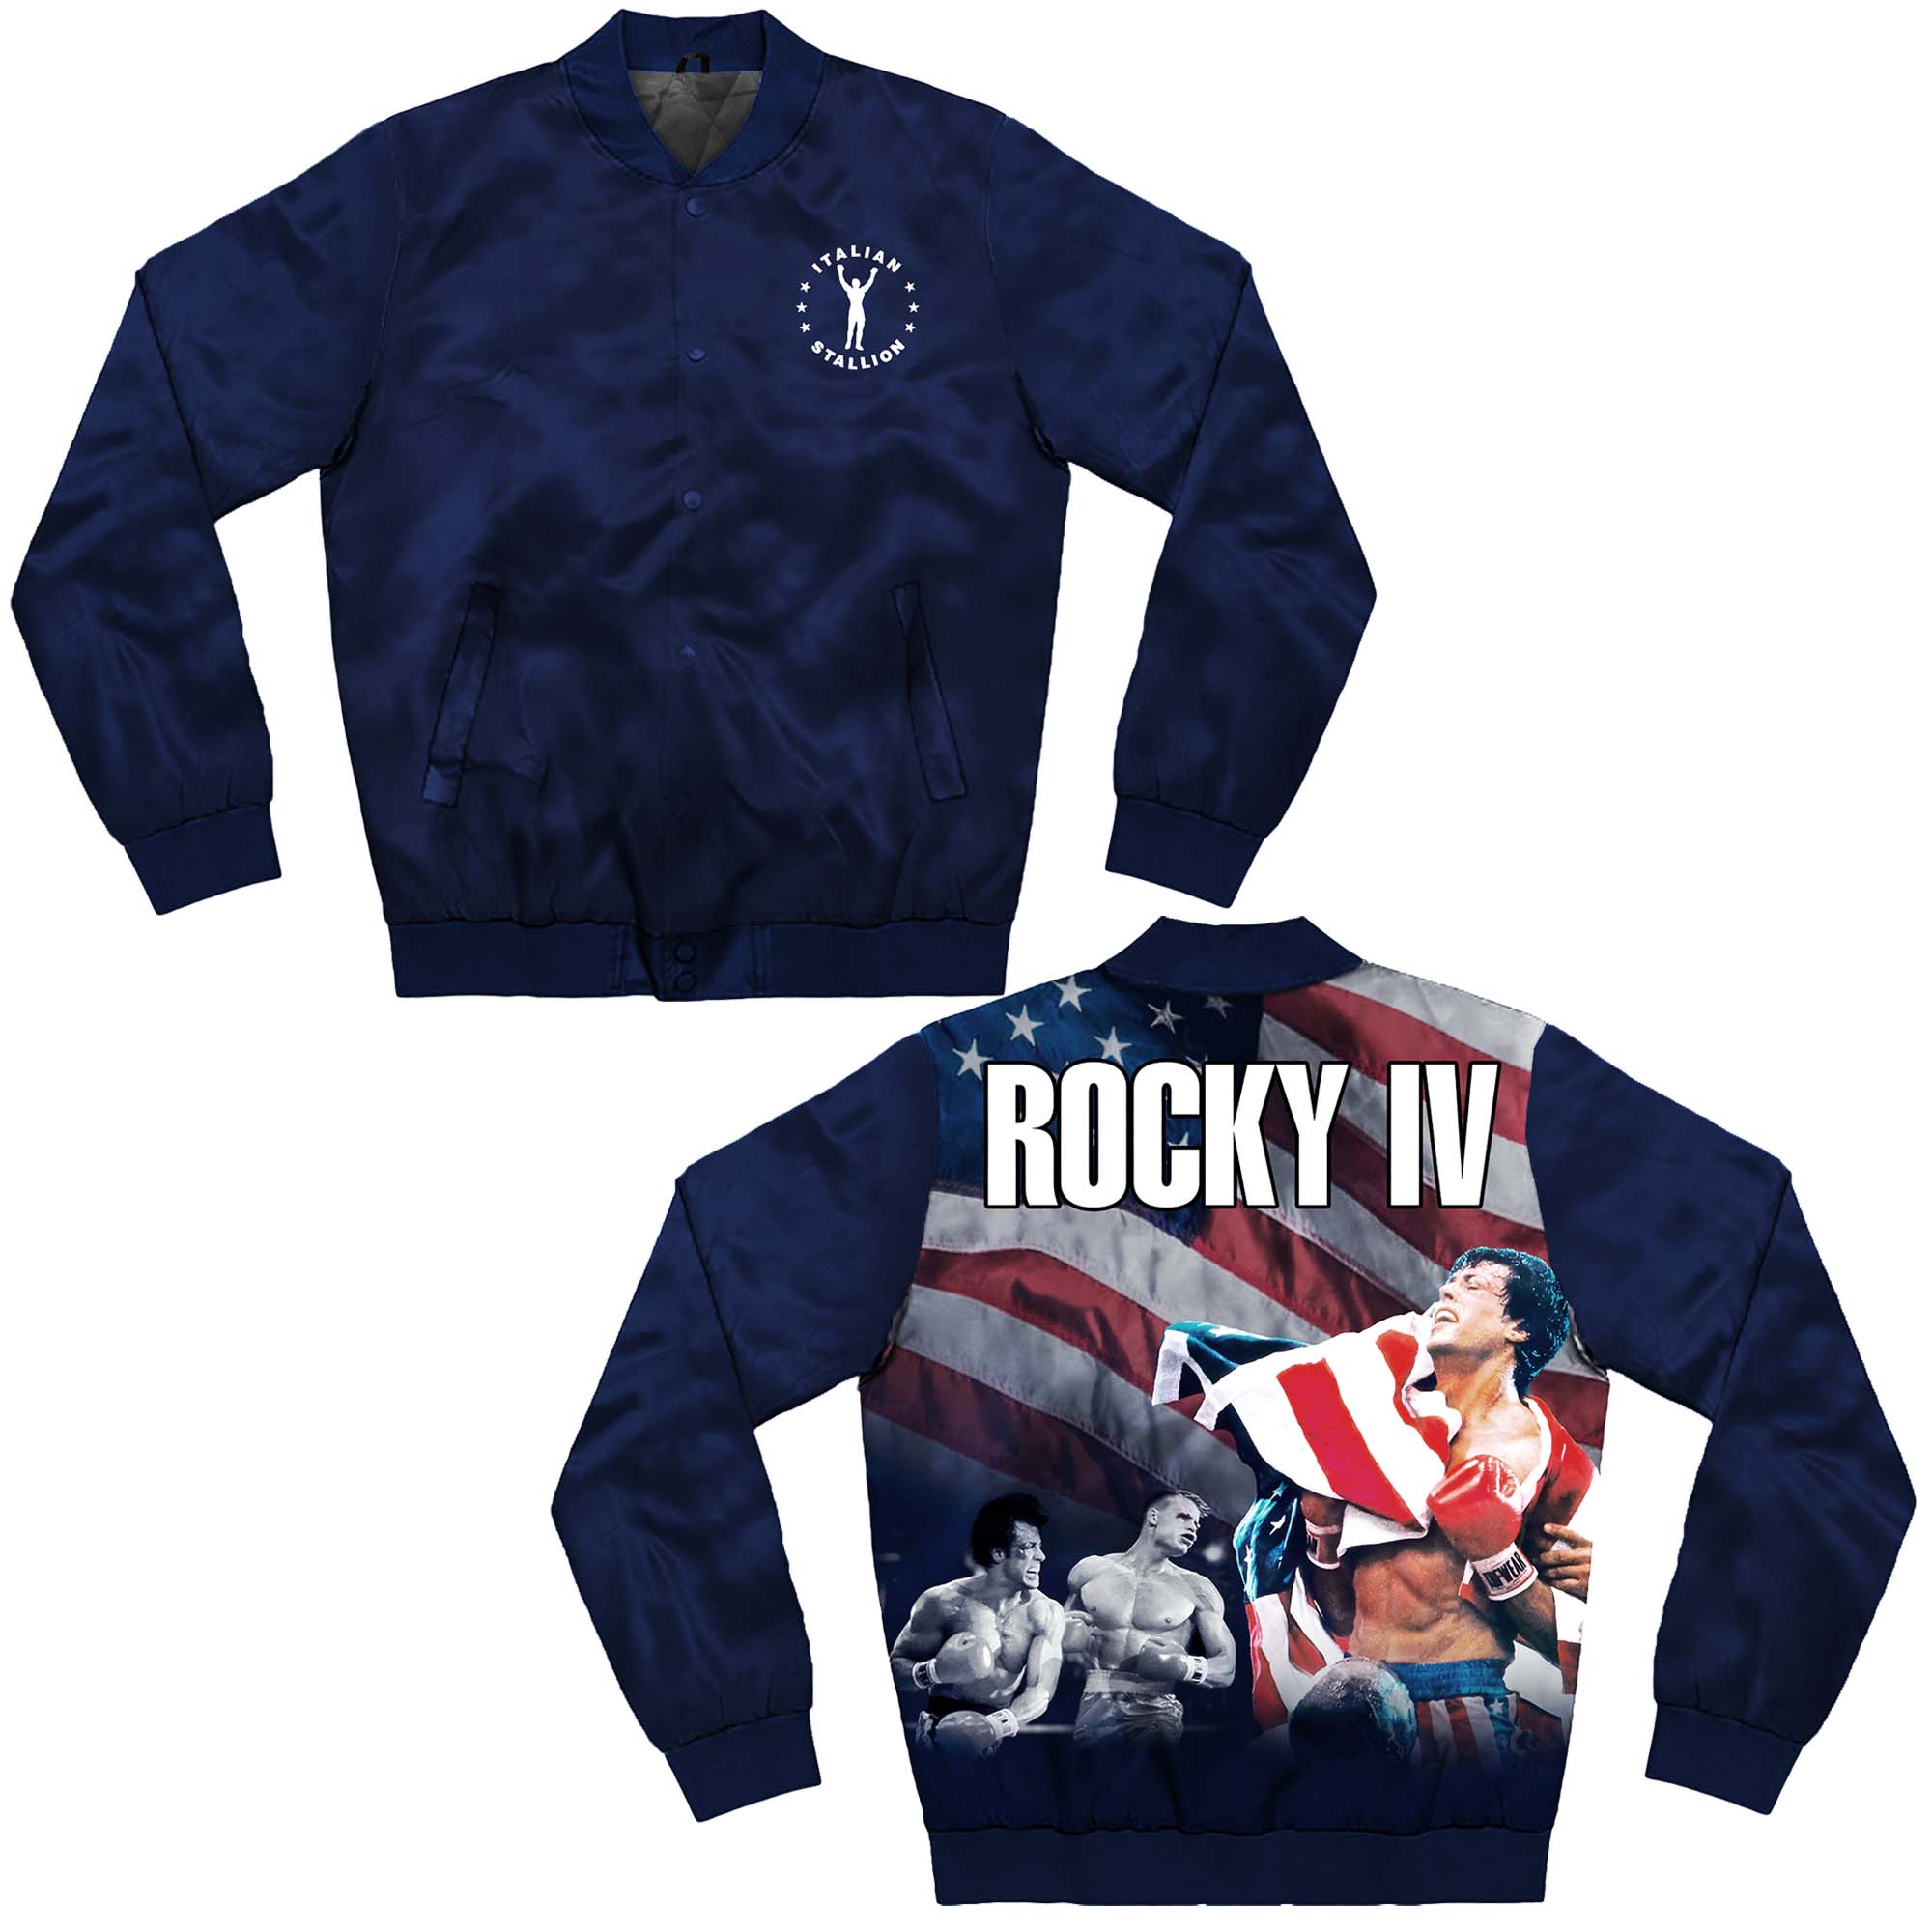 Rocky IV Sublimation Jacket